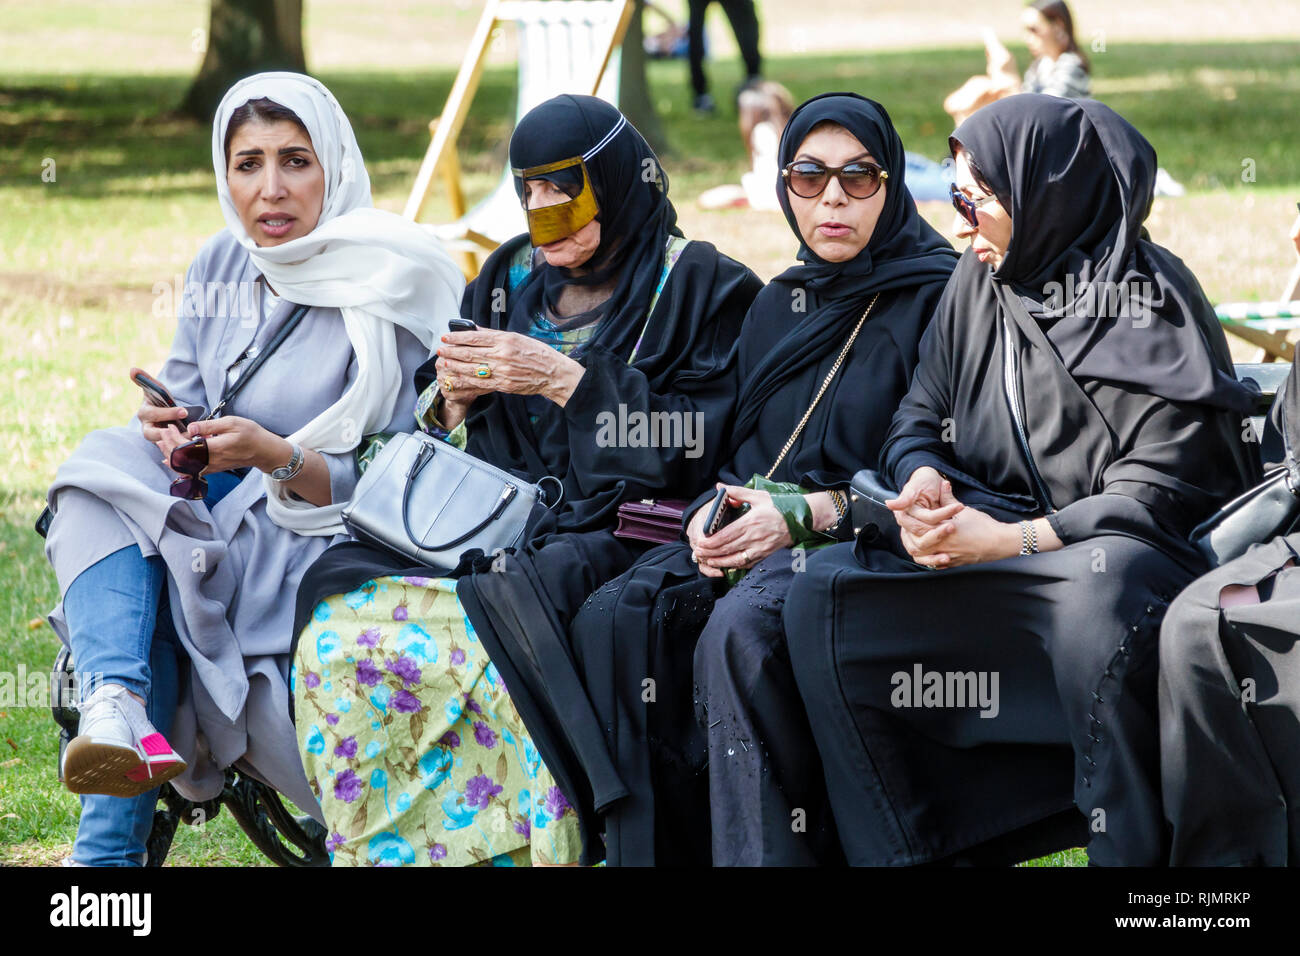 Vereinigtes Königreich Großbritannien England London Hyde Park öffentlicher Park Serpentine Road Bank Nahost Arab Muslim Erwachsene Frau Frauen fe Stockfoto